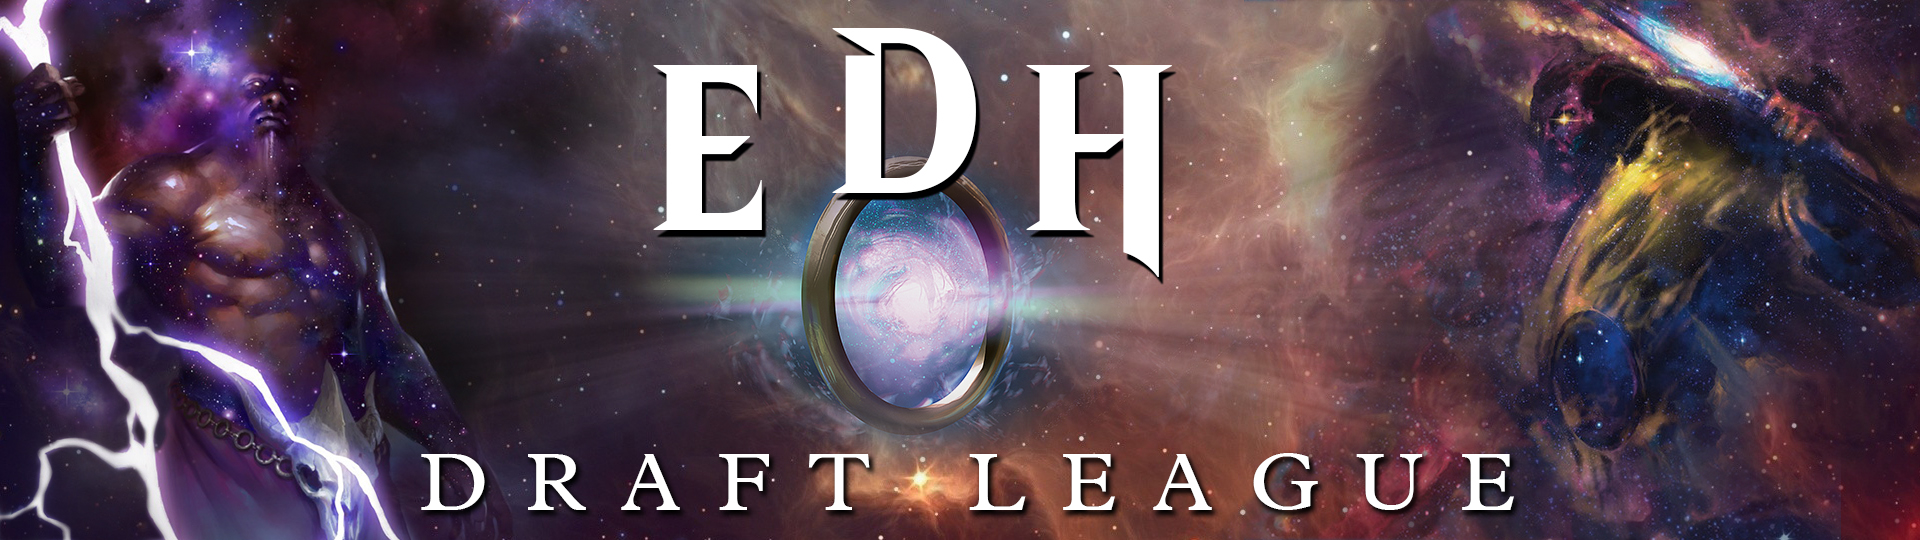 EDH Draft League Banner